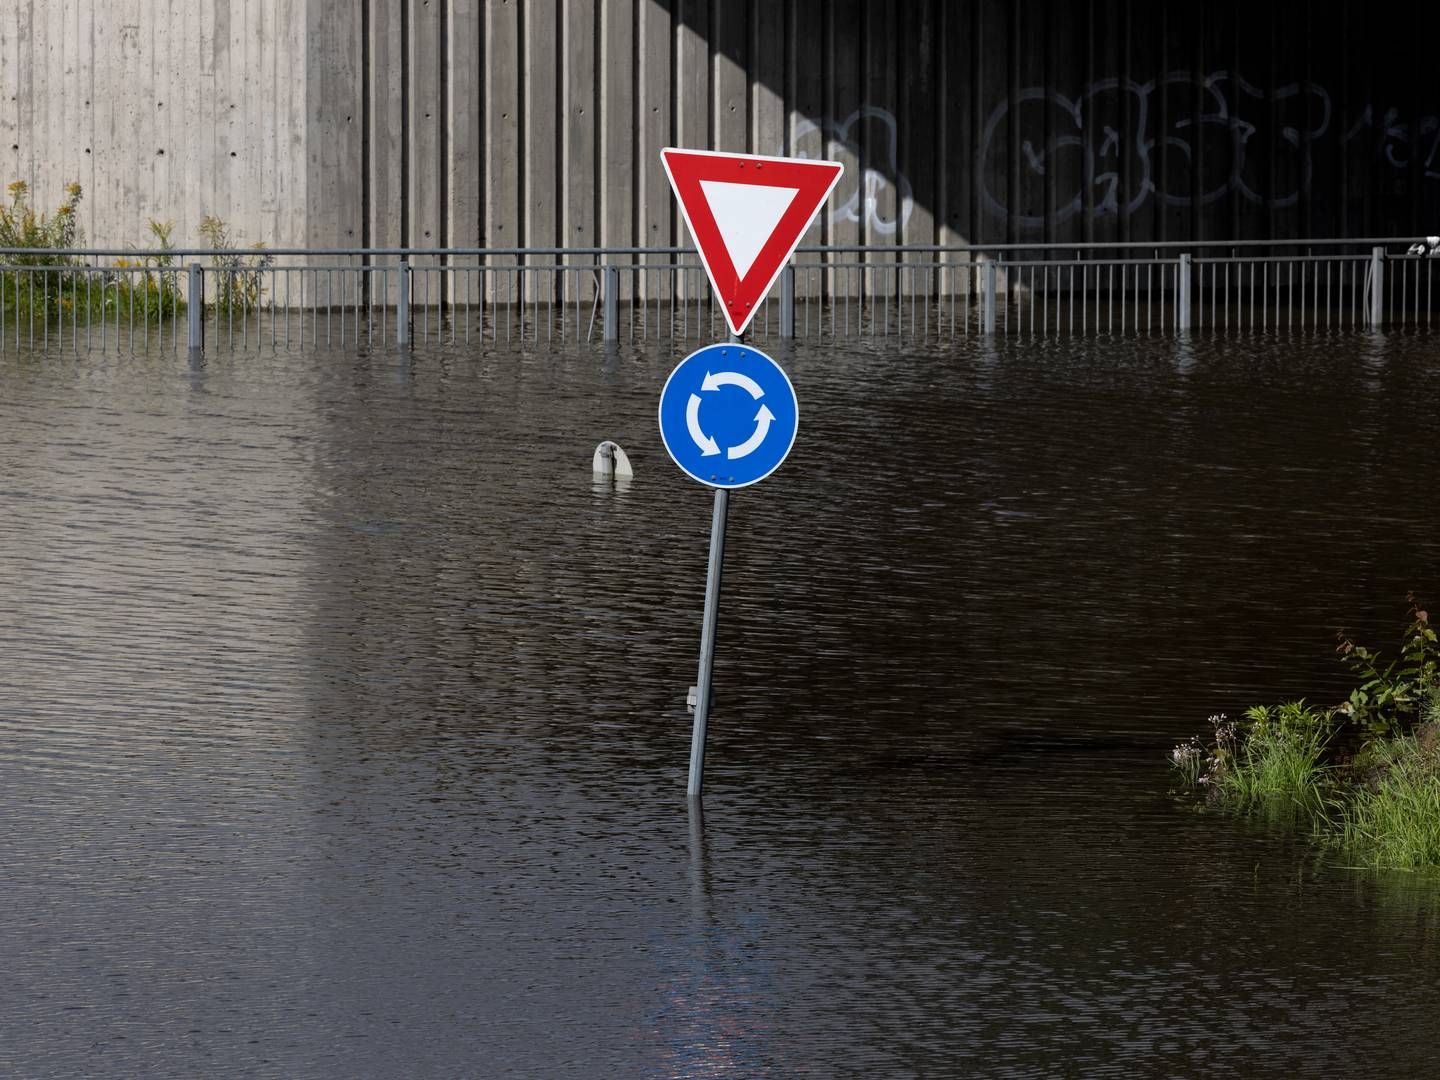 Flensted, 20 kilometer vest for Aarhus, var tirsdag ramt af 70 millimeter regn. Normalt falder der 83 millimeter regn i Danmark i hele oktober. | Photo: Jacob Ehrbahn